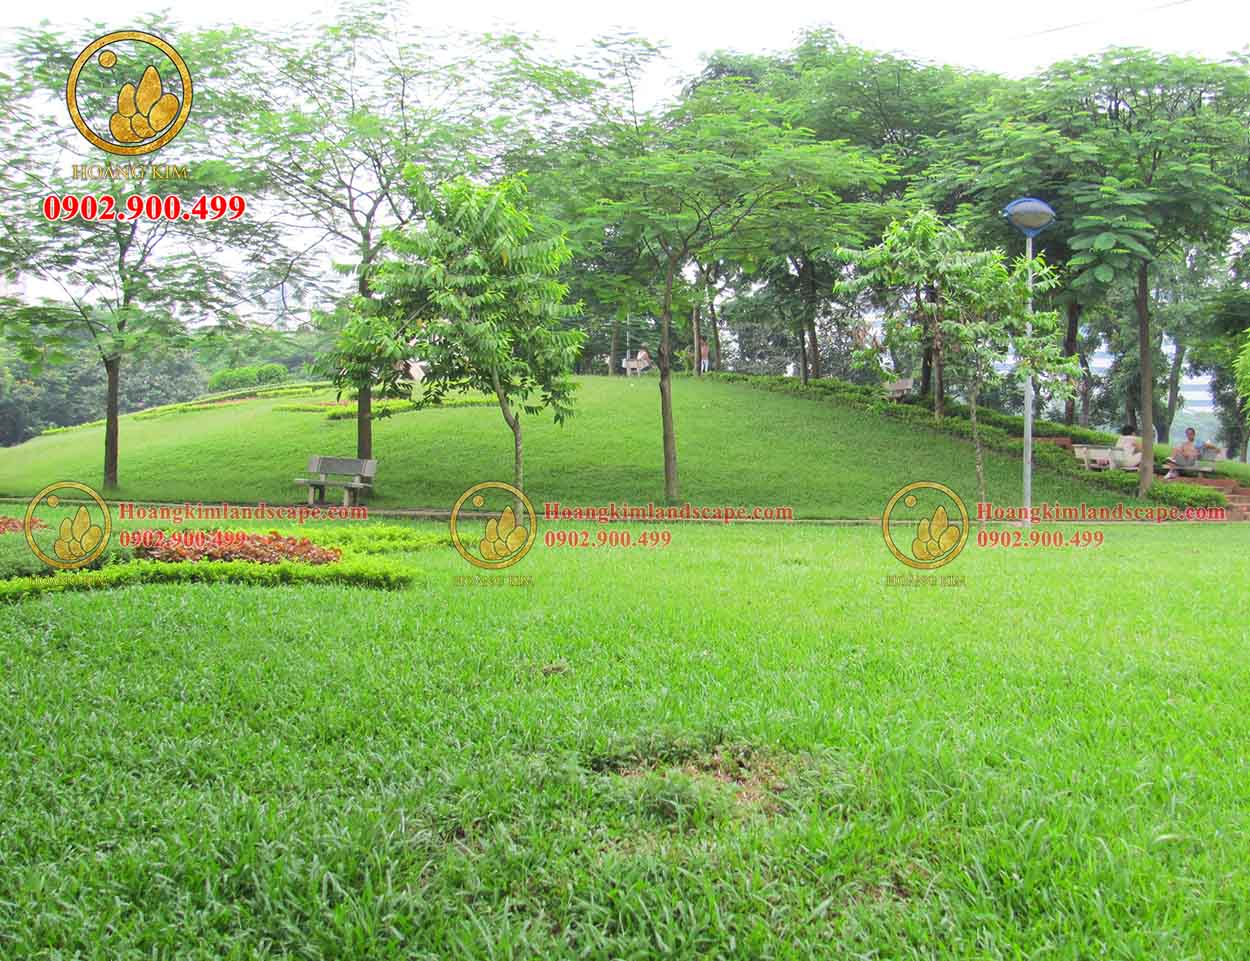 Thảm cỏ được trồng ở trong công viên